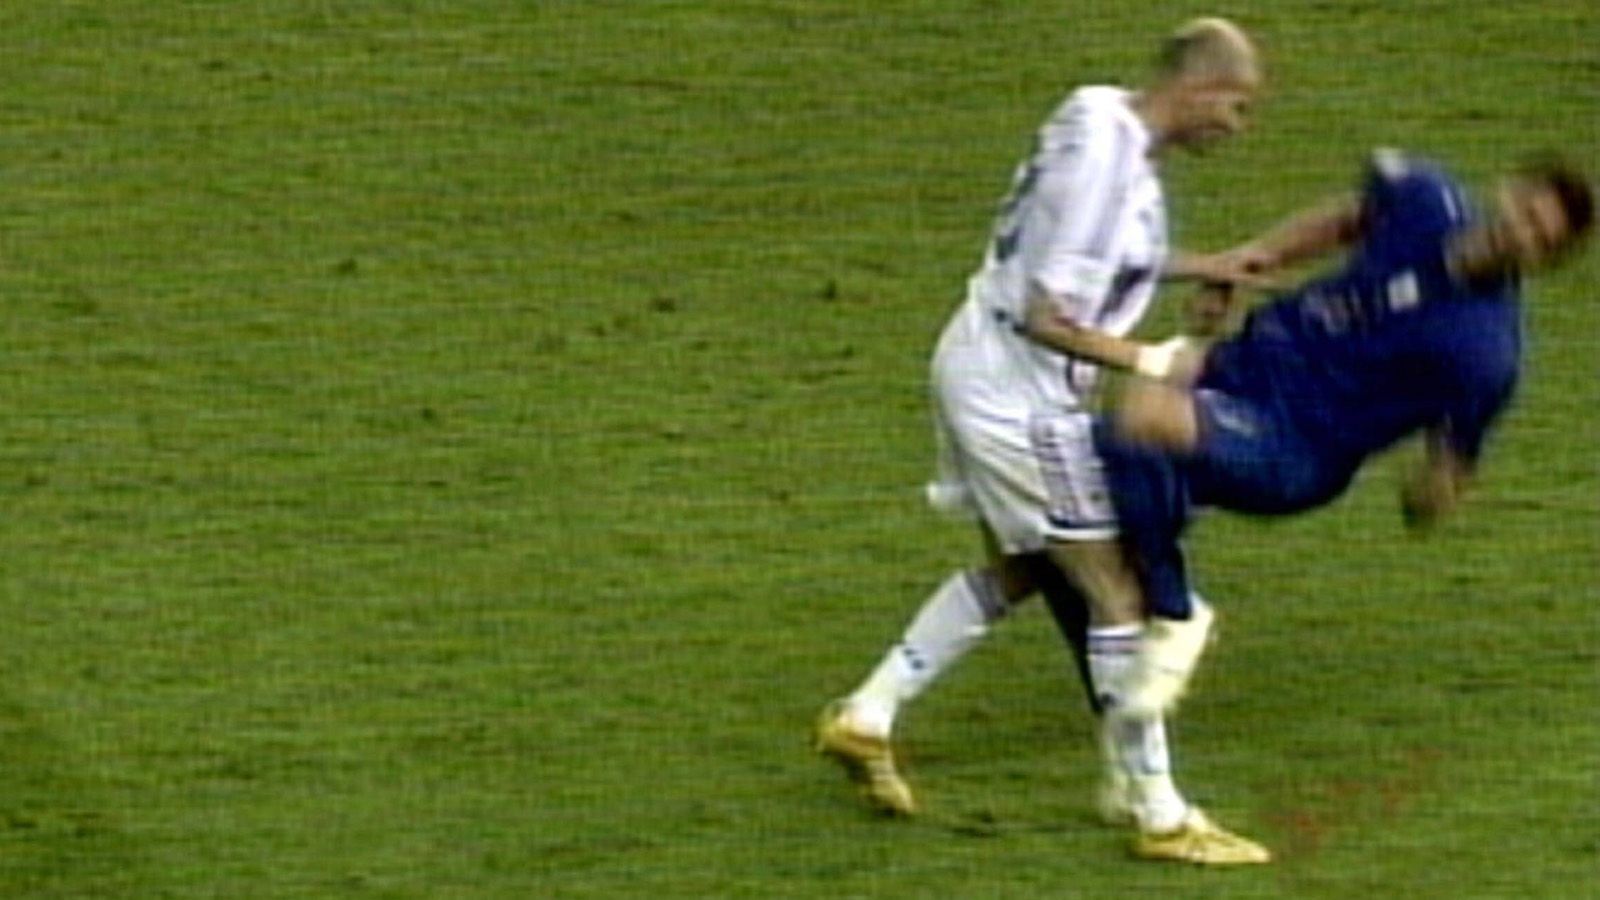 
                <strong>Zinedine Zidane: Der Kopfstoß war der Abschluss</strong><br>
                Das letzte Spiel von Zinedine Zidane war ein Skandal. Beim WM-Finale im Jahre 2006 zwischen Frankreich und Italien verpasste er seinem Gegenspieler Marco Materazzi einen Kopfstoß und wurde mit der Roten Karte vom Platz gestellt. Frankreich verlor im Elfmeterschießen mit 3:5. Zidane wurde von der FIFA für drei Spiele gesperrt. Dies war allerdings unbedeutend, da er seine Karriere ohnehin beendete. Stattdessen stellte er sich drei Tage lang für soziale Arbeit mit Kindern und Jugendlichen zur Verfügung.
              